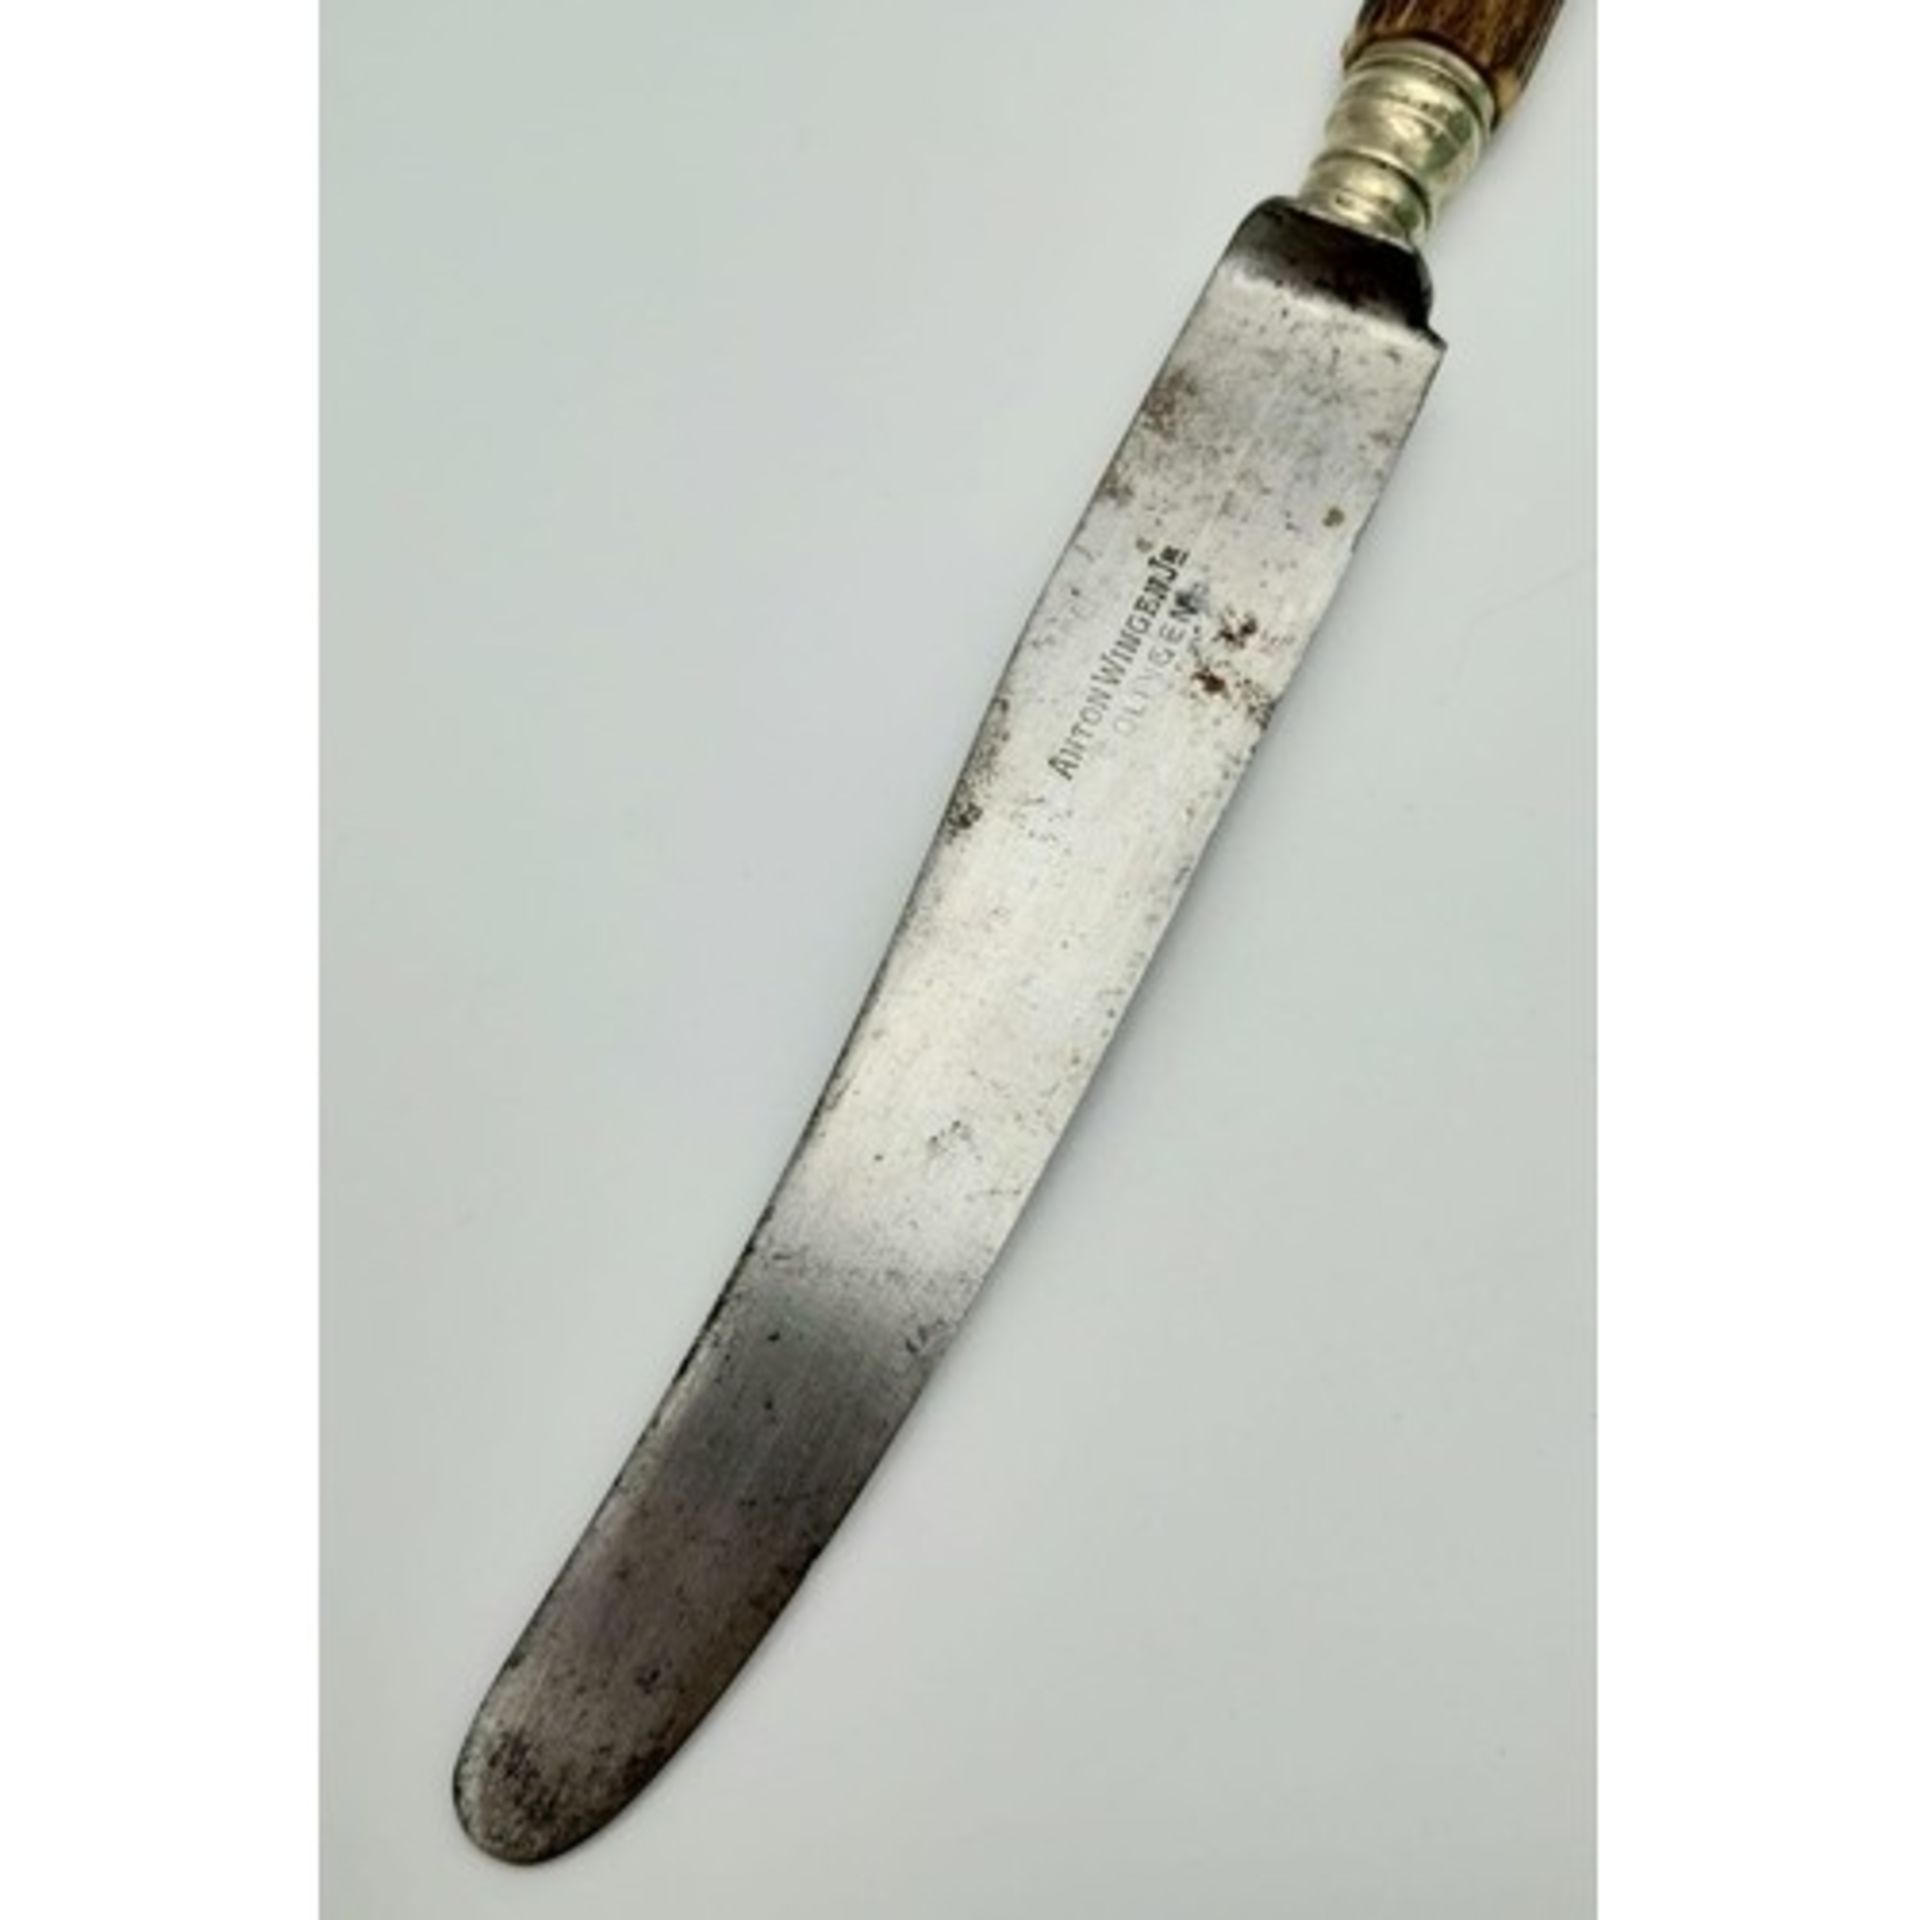 3rd Reich Hunting Association Antler handled knife with hand engraved logo. Maker Anton Wingen Jr. - Bild 4 aus 6